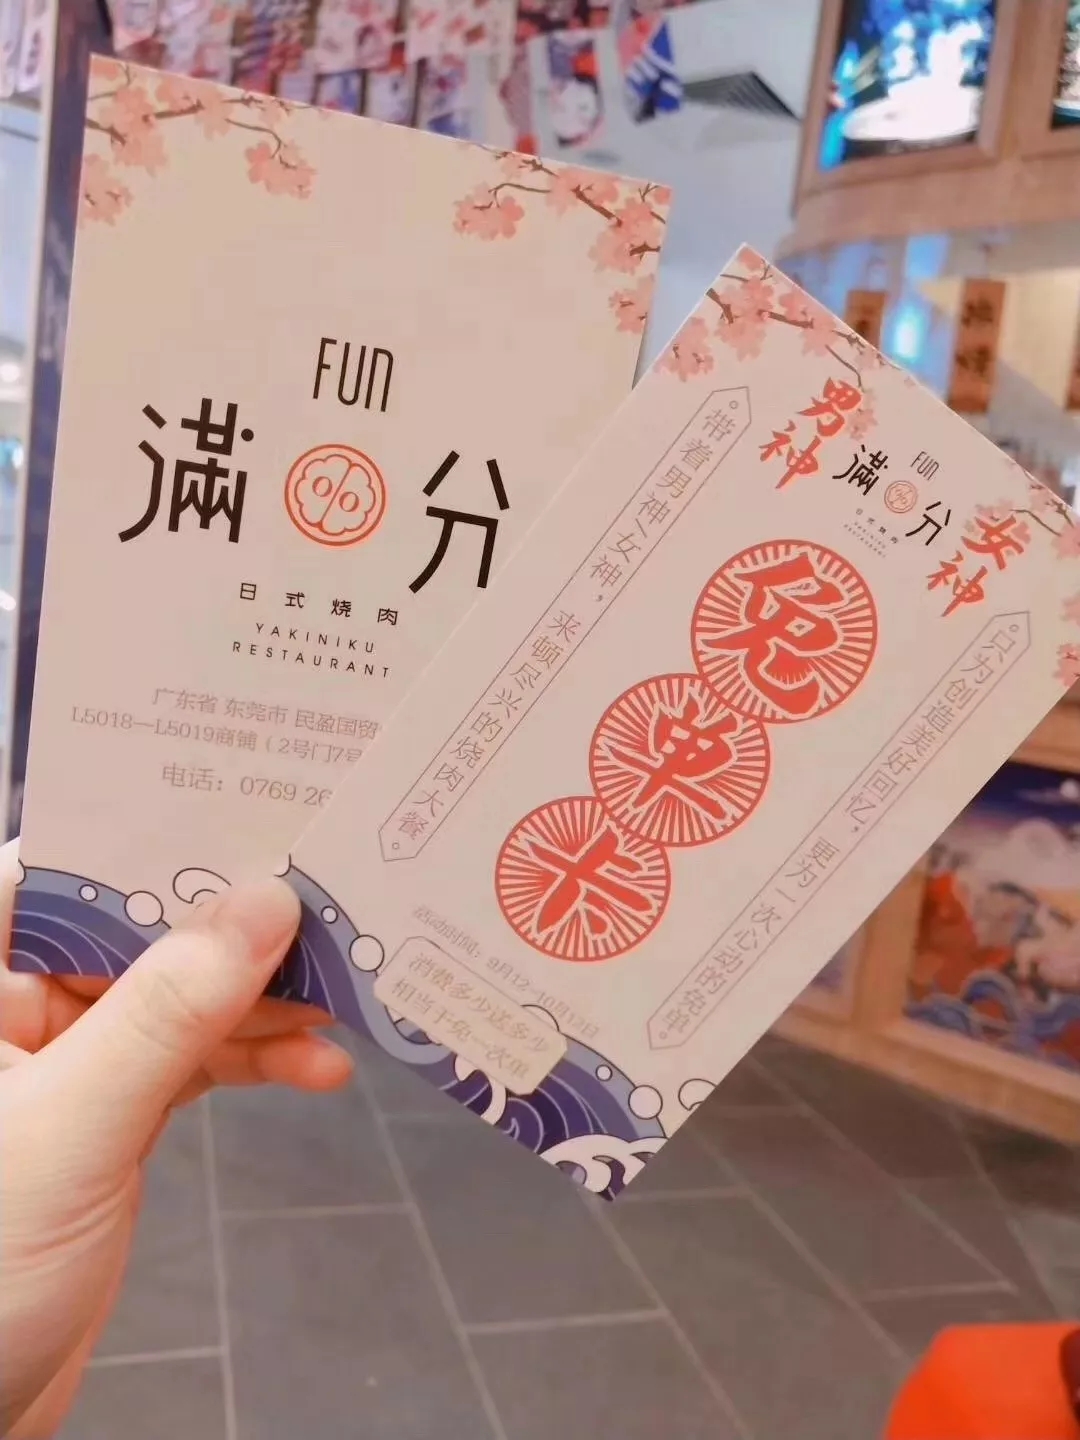 东莞日式烧肉餐饮品牌满分优惠券形象设计